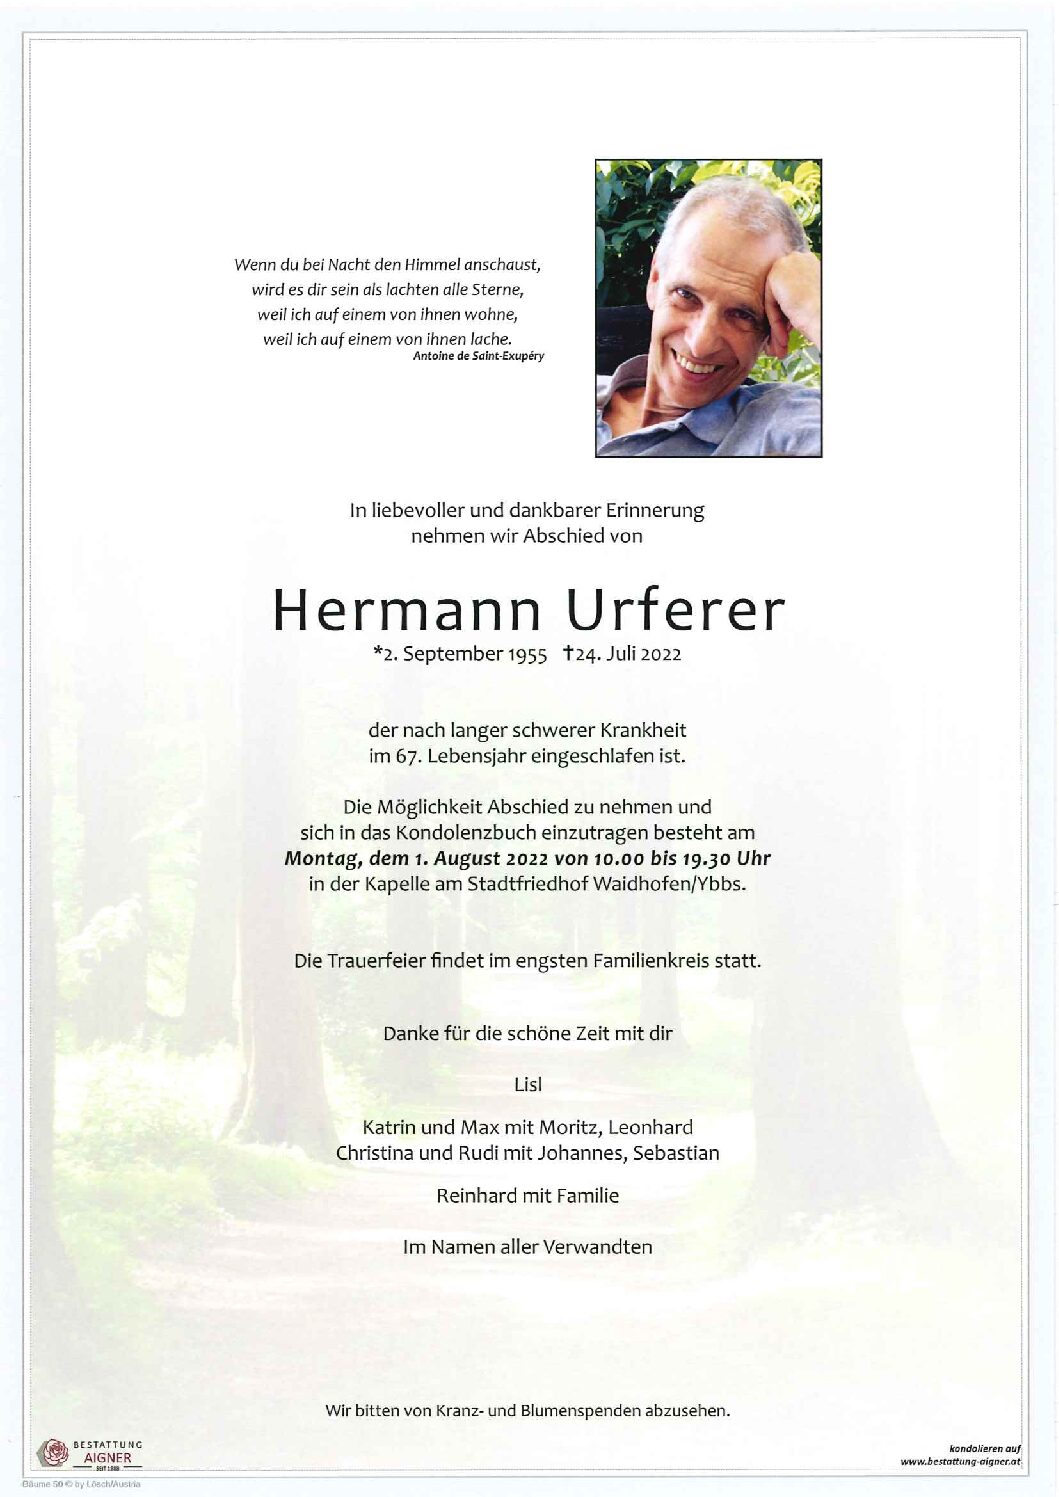 Hermann Urferer